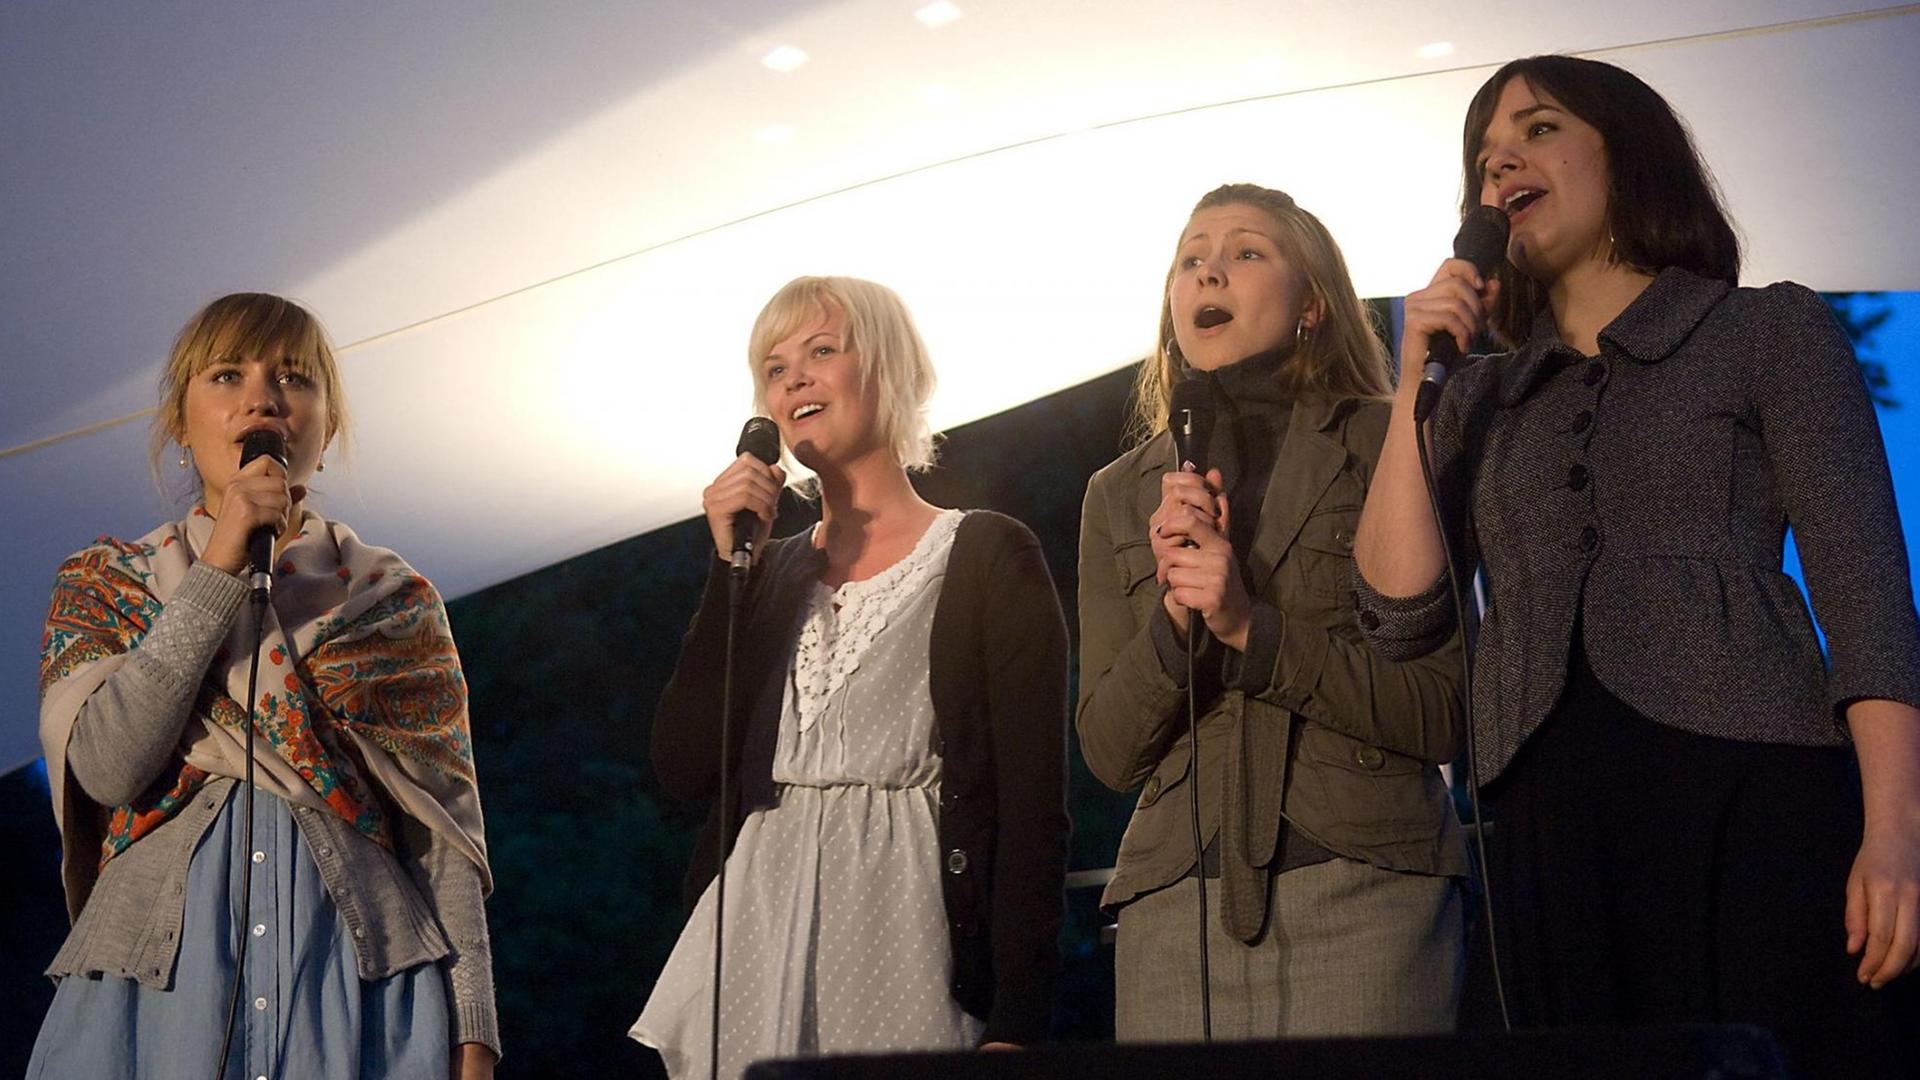 Vier Sängerinnen der Folkband Kraja aus Schweden stehen nebeneinander, halten Mikrofone in der Hand und singen